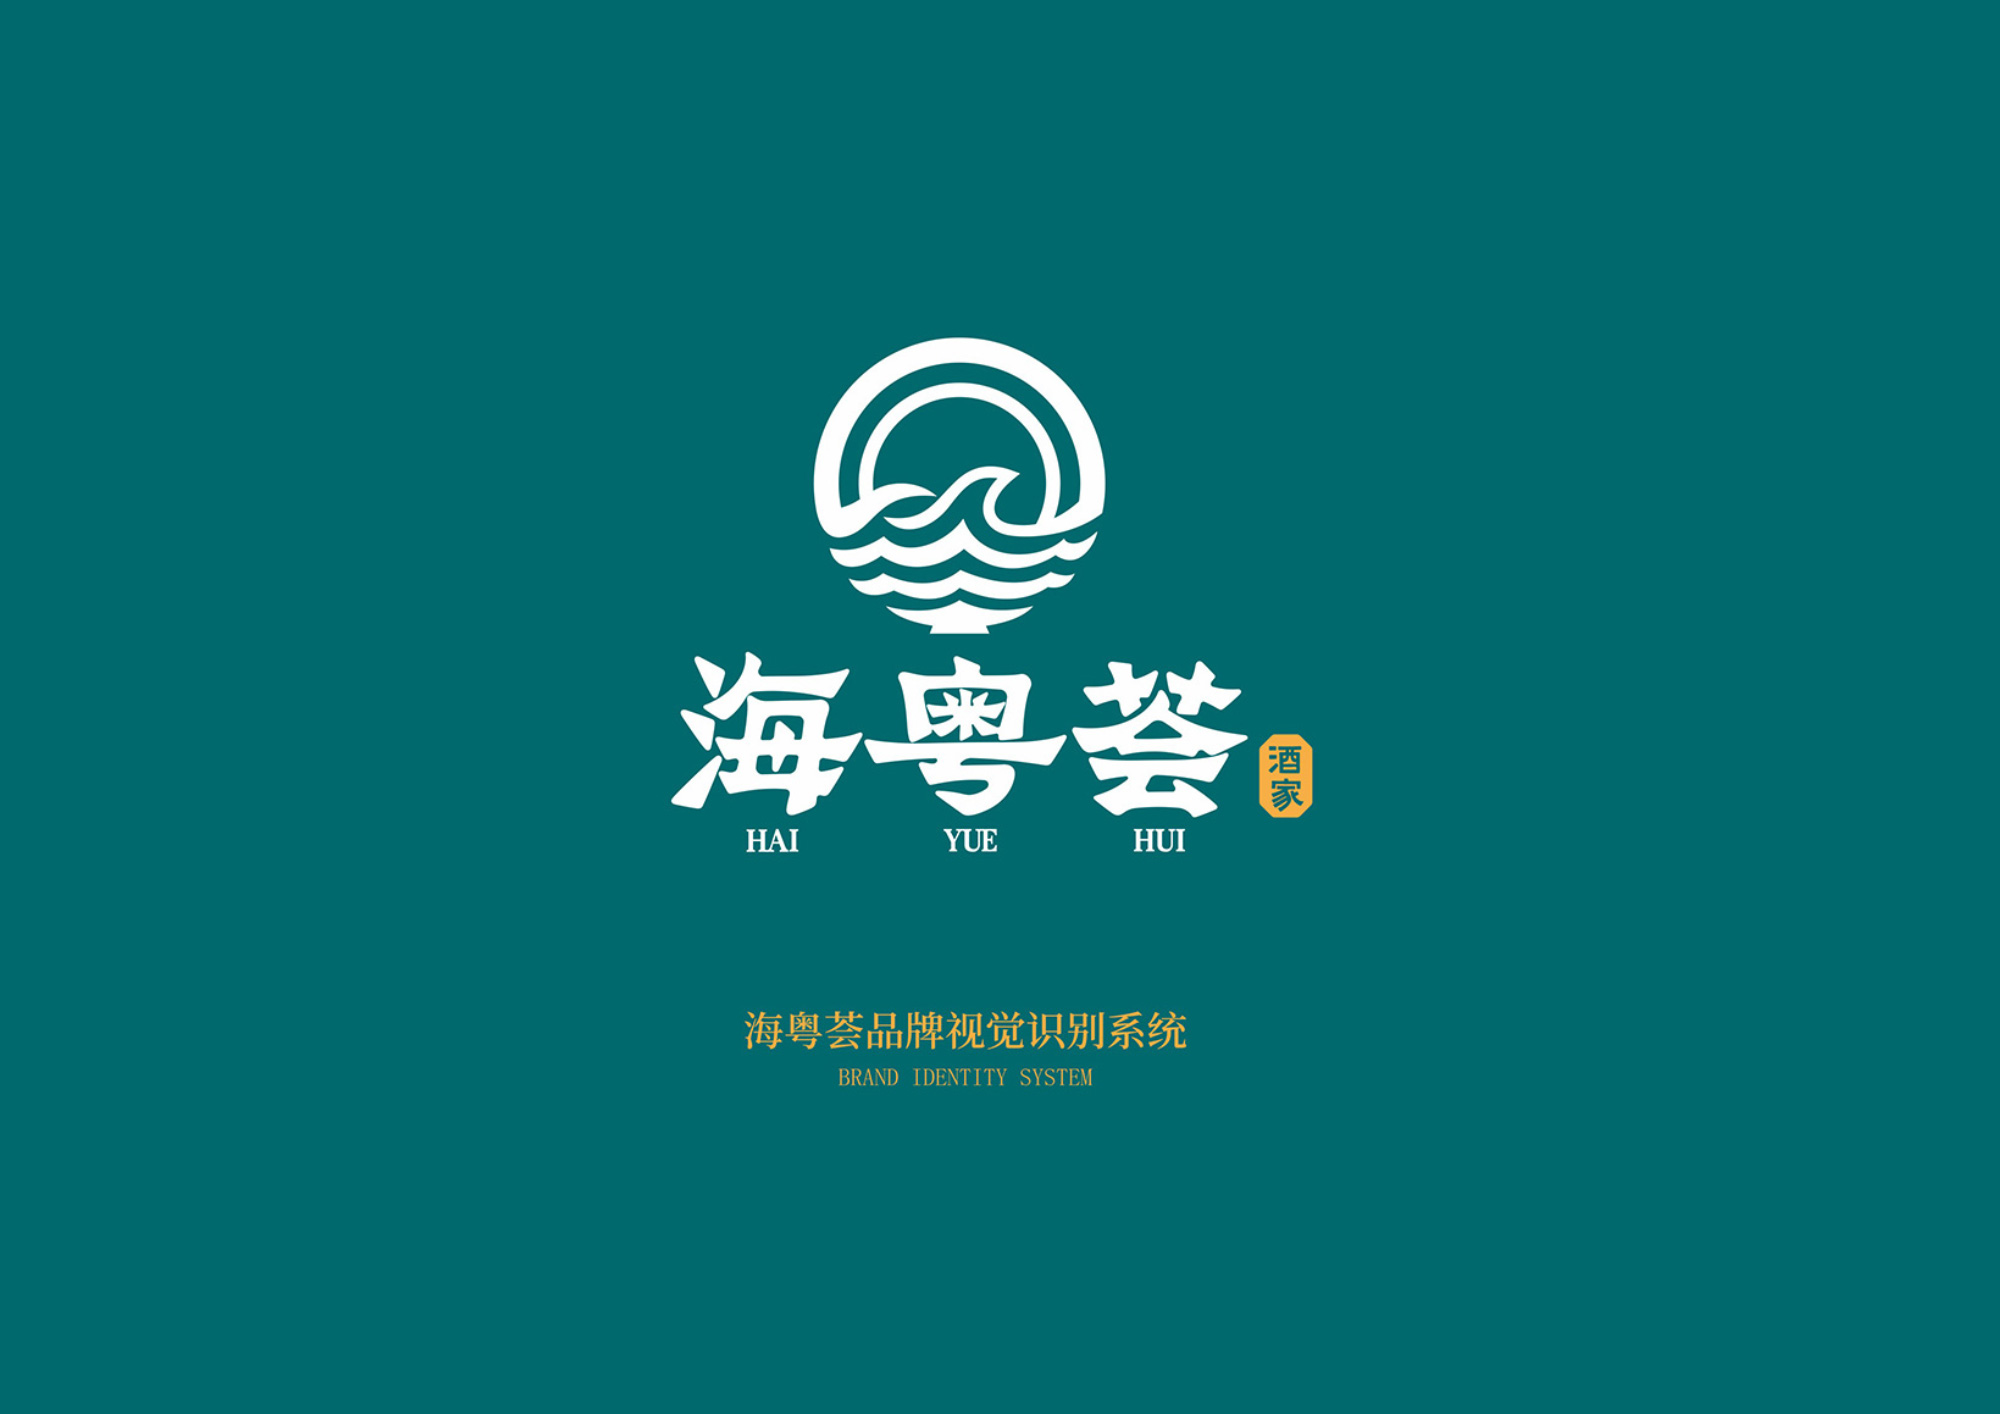 海粤荟餐饮品牌形象策划与设计